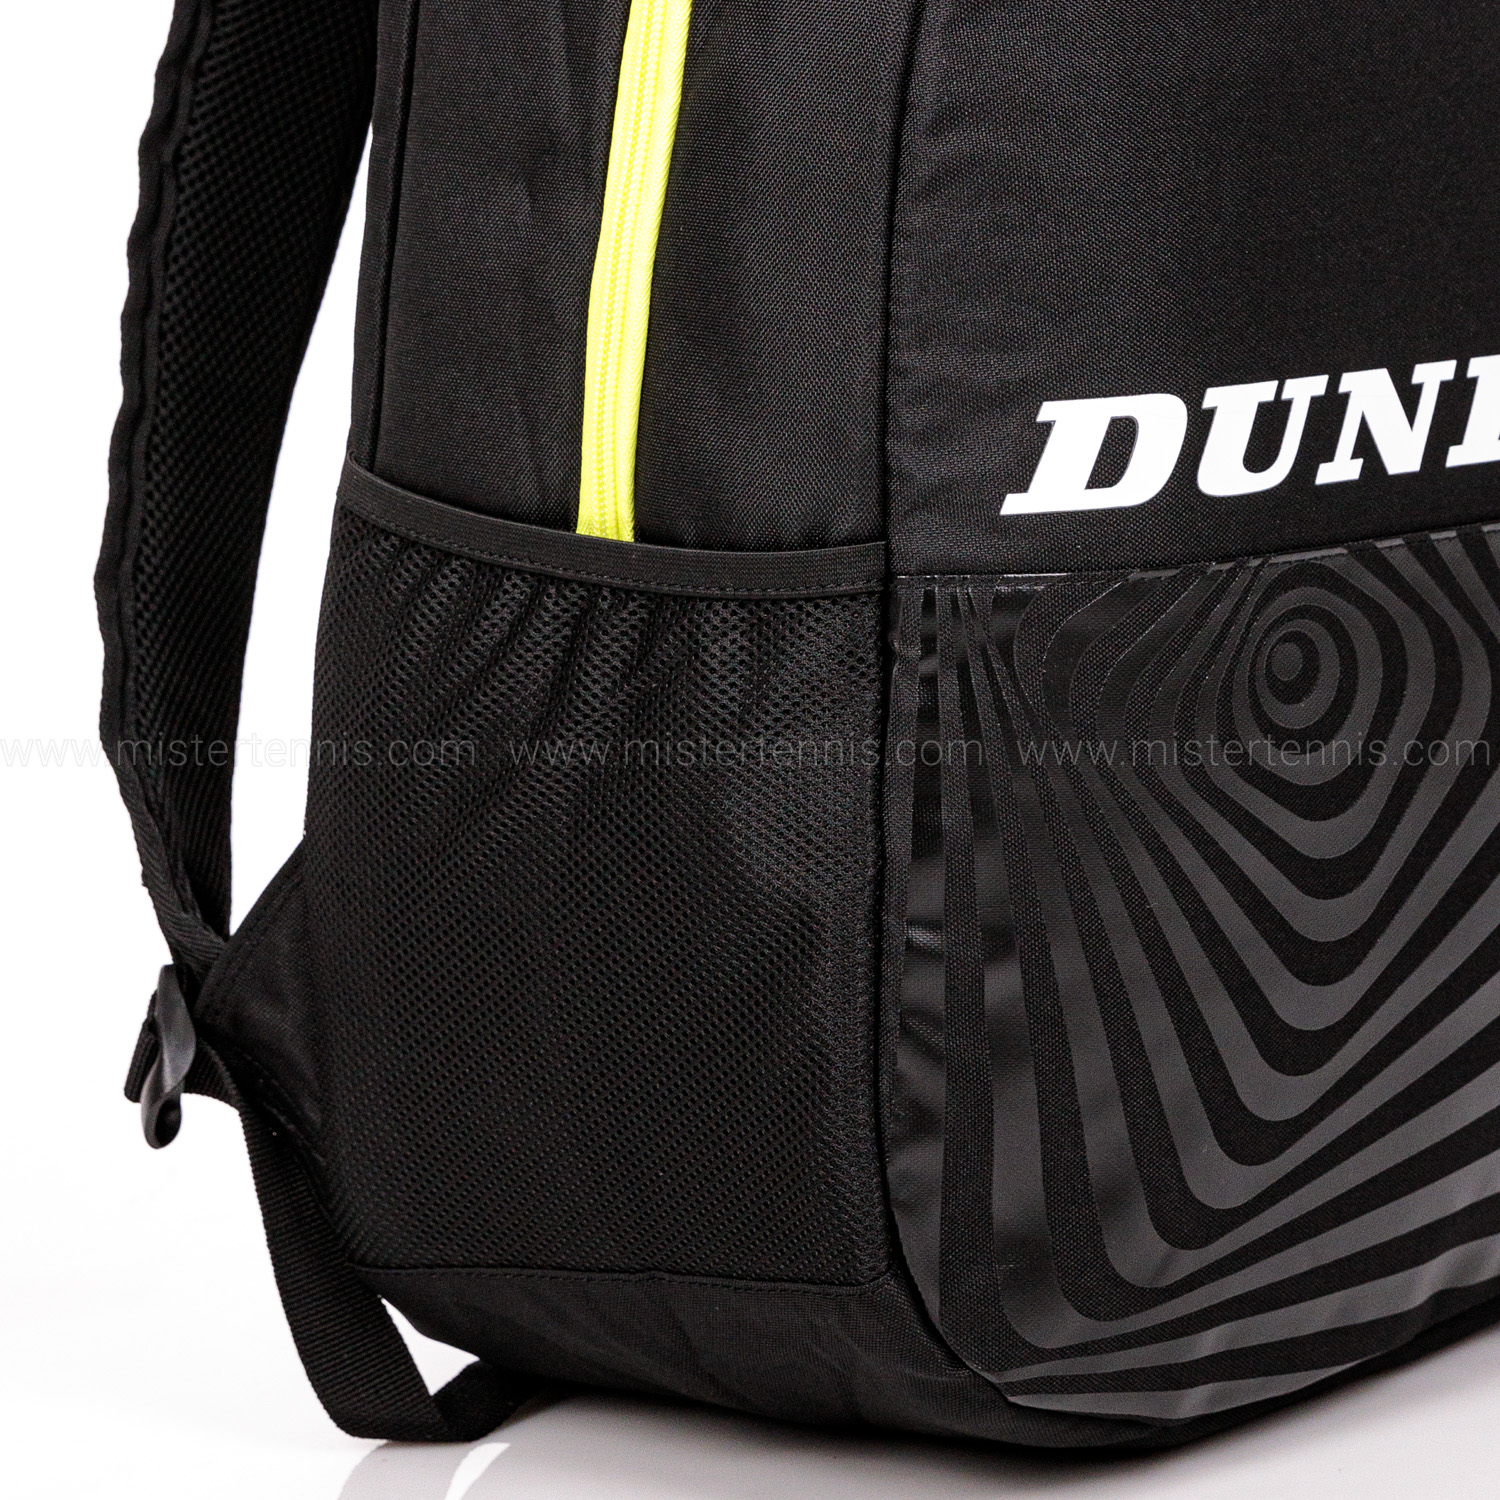 Dunlop SX Club Zaino - Black/Yellow